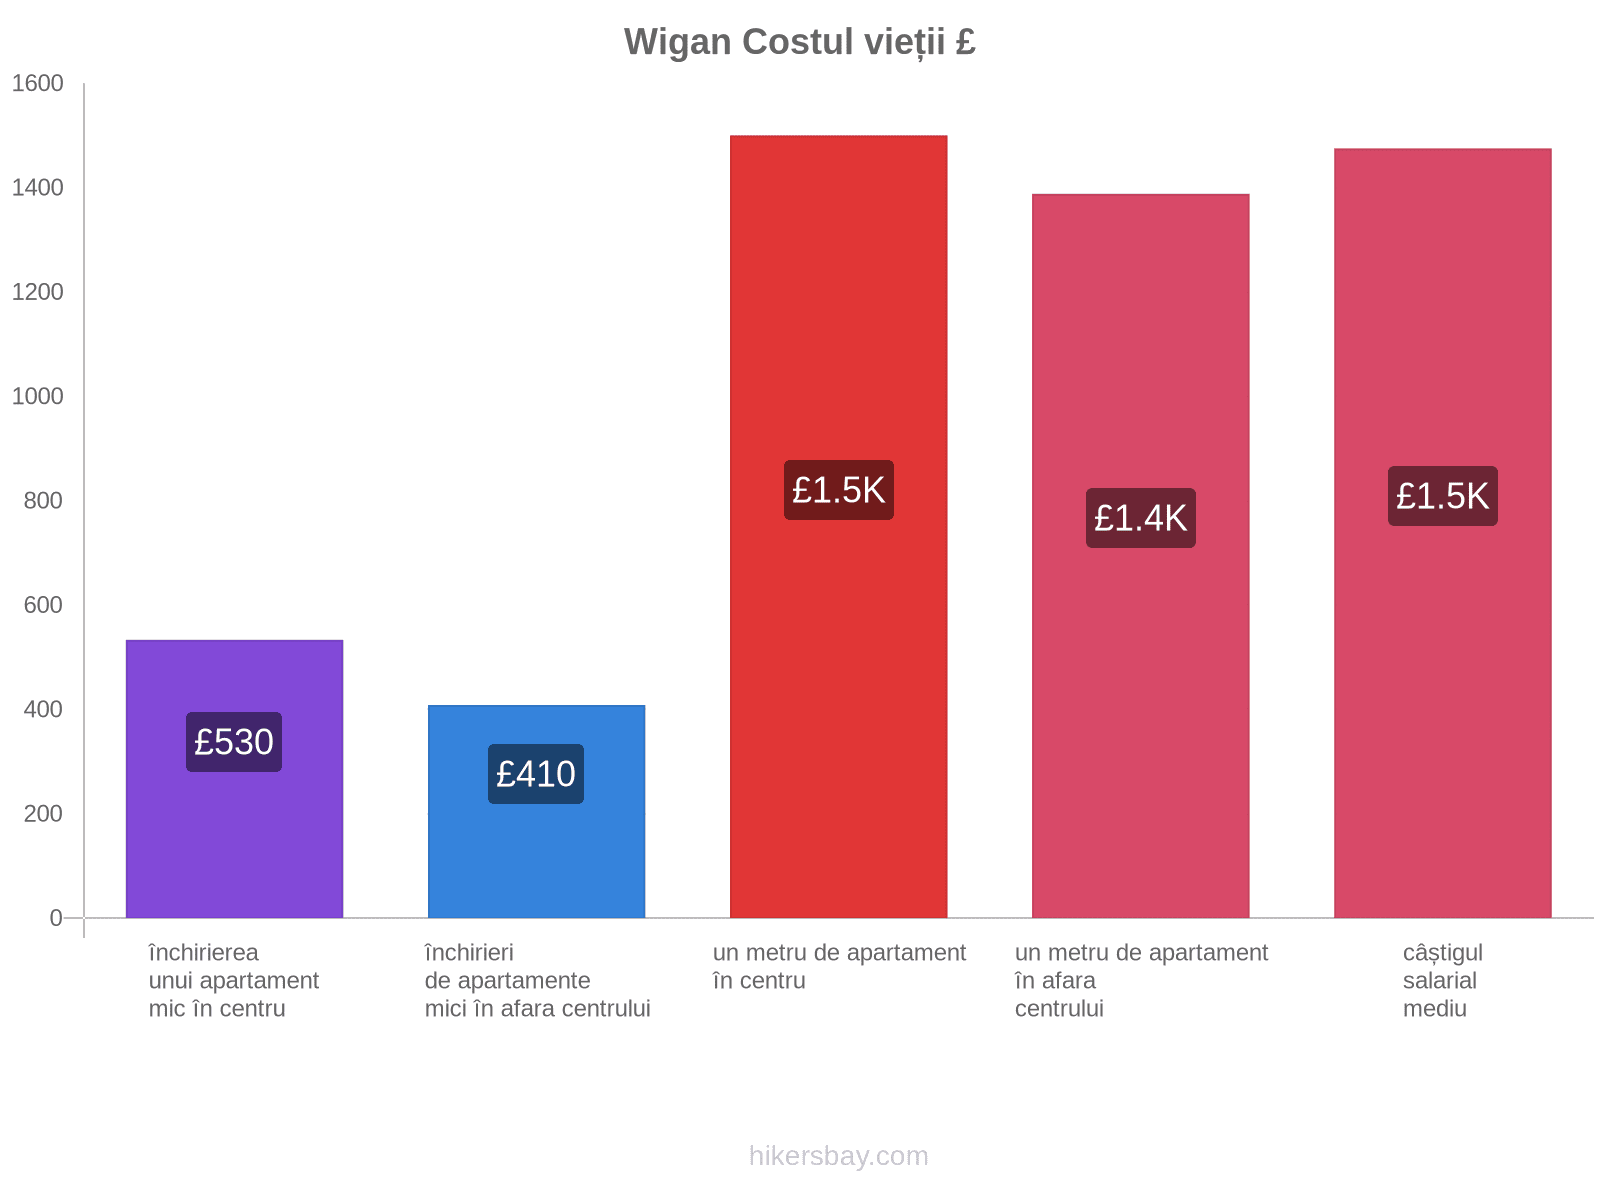 Wigan costul vieții hikersbay.com